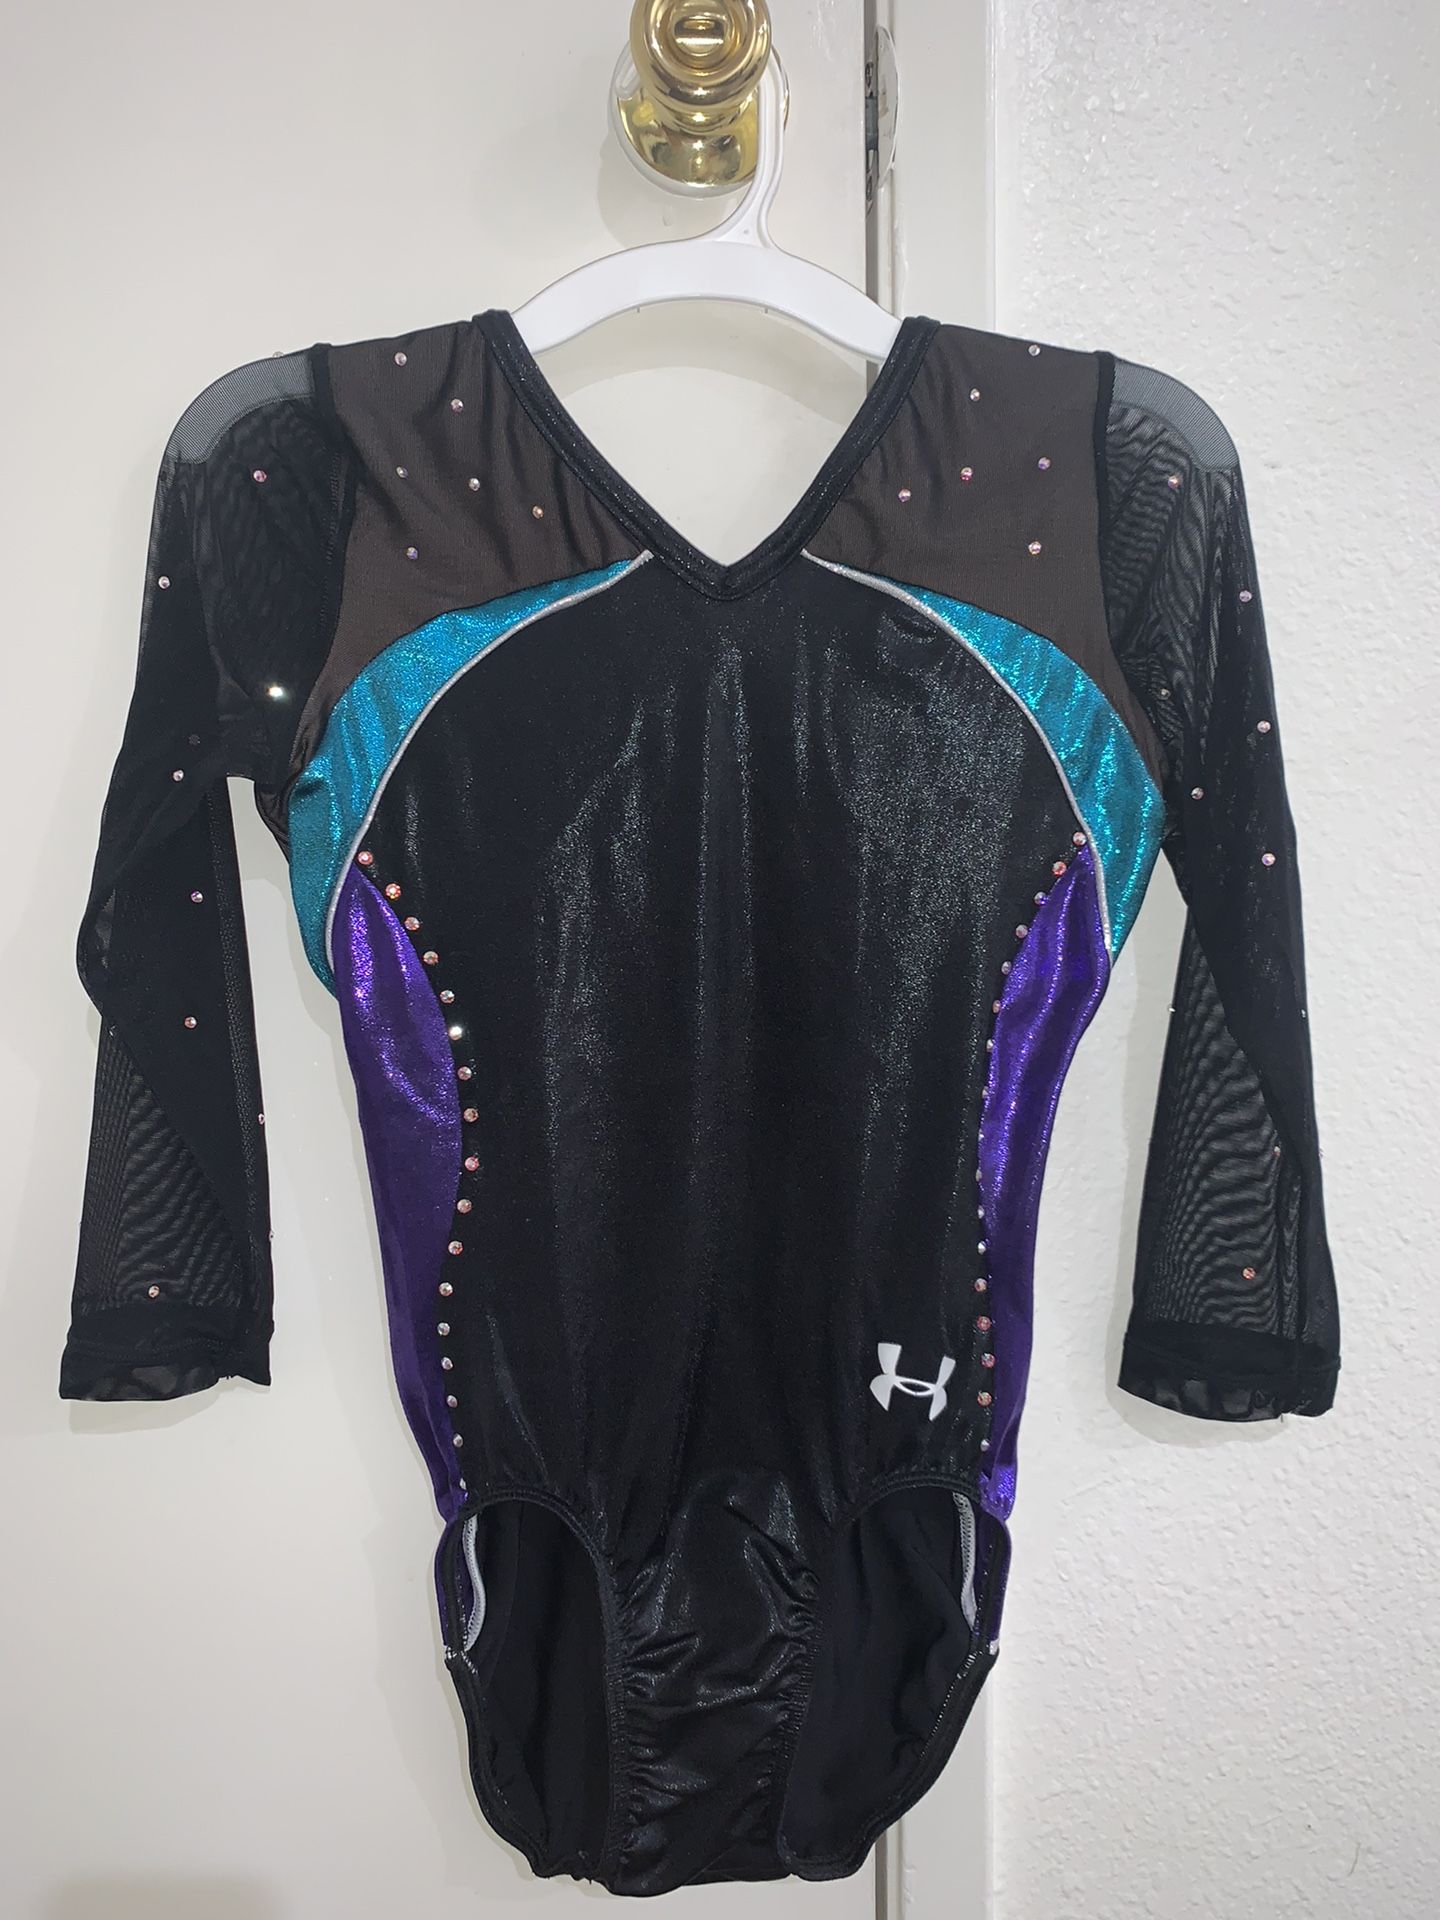 Black, Turquoise & Purple Under Armour Adult Medium Gymnastics Leotard